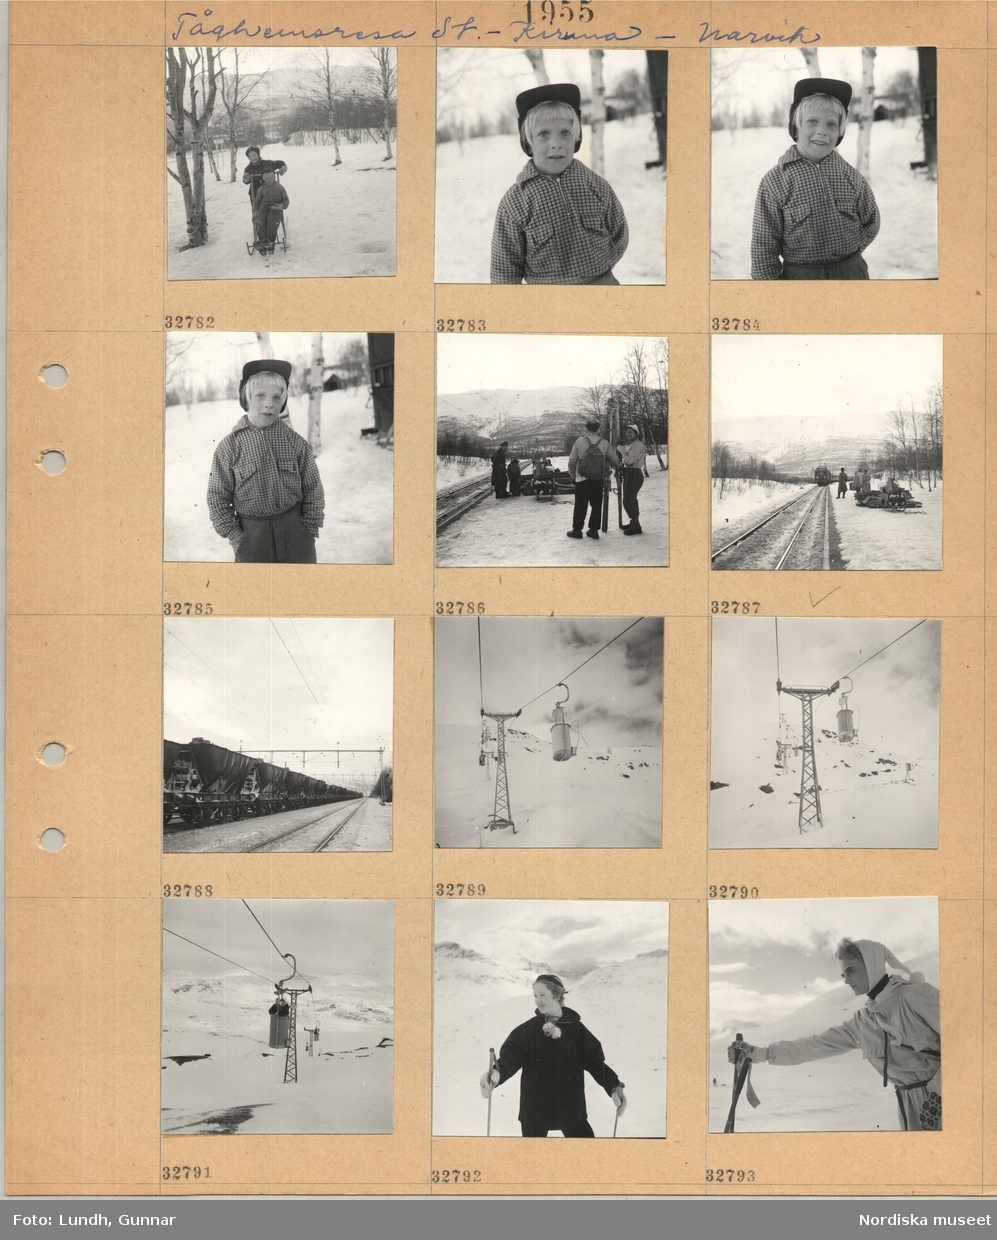 Motiv: Tåghemsresa St. - Kiruna - Narvik ;
Två barn på sparkstötting i ett snötäckt landskap, porträtt av ett barn, människor står vid ett järnvägsspår på en station, godsvagnar lastade med järnmalm, en linbana, människor åker i en linbana, porträtt av en kvinna med skidstavar.